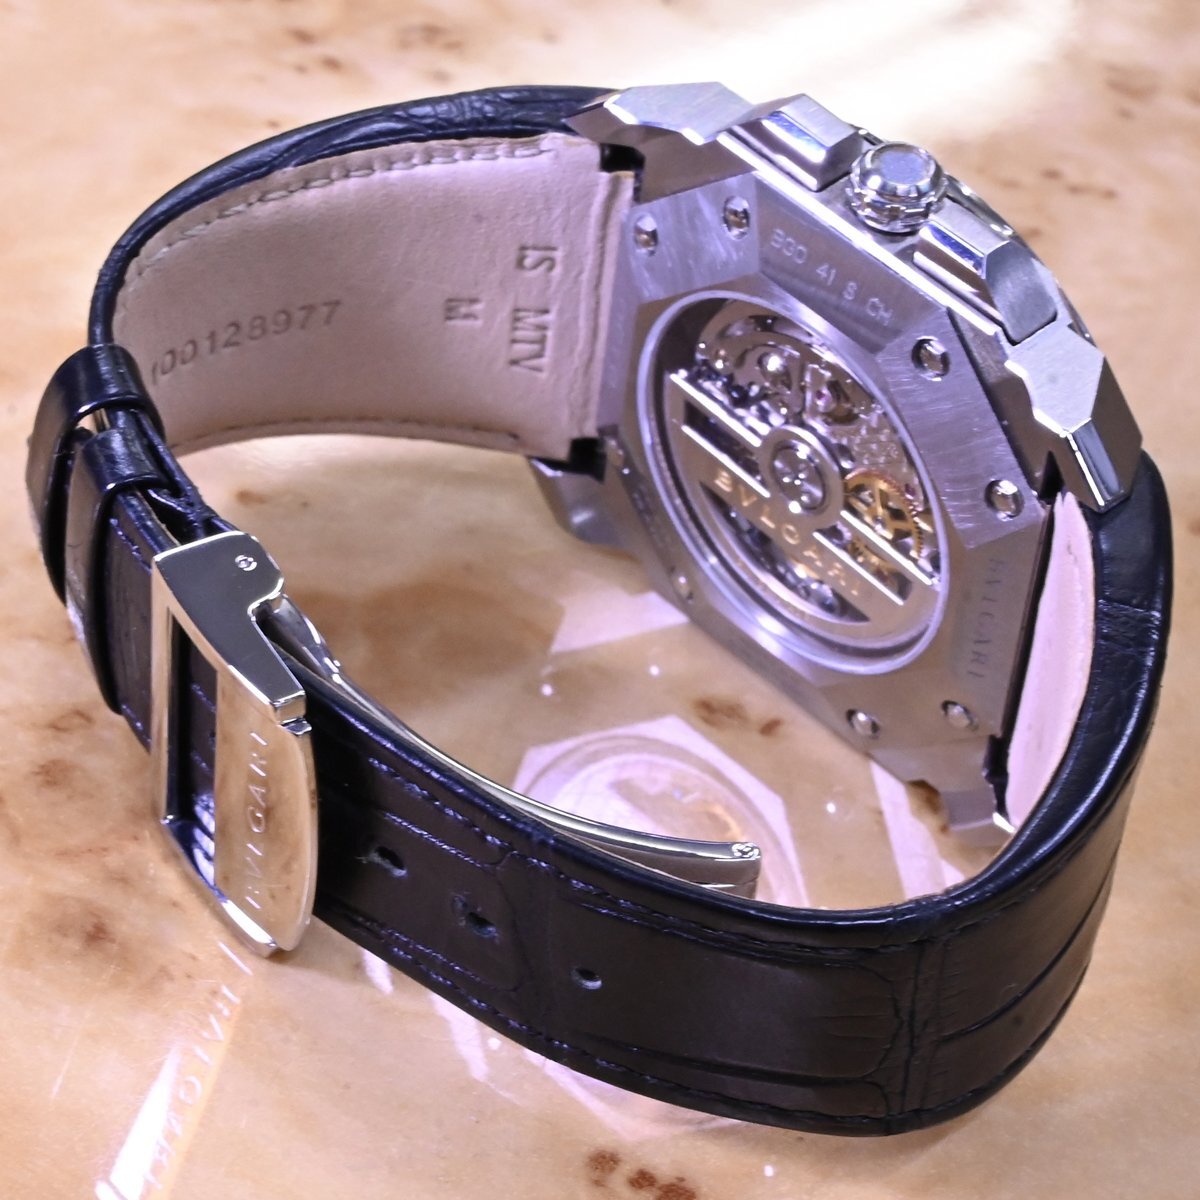  подлинный товар первоклассный товар BVLGARY L plimero Okt verotisimo хронограф мужской часы мужской самозаводящиеся часы наручные часы сохранение коробка с гарантией BVLGARI